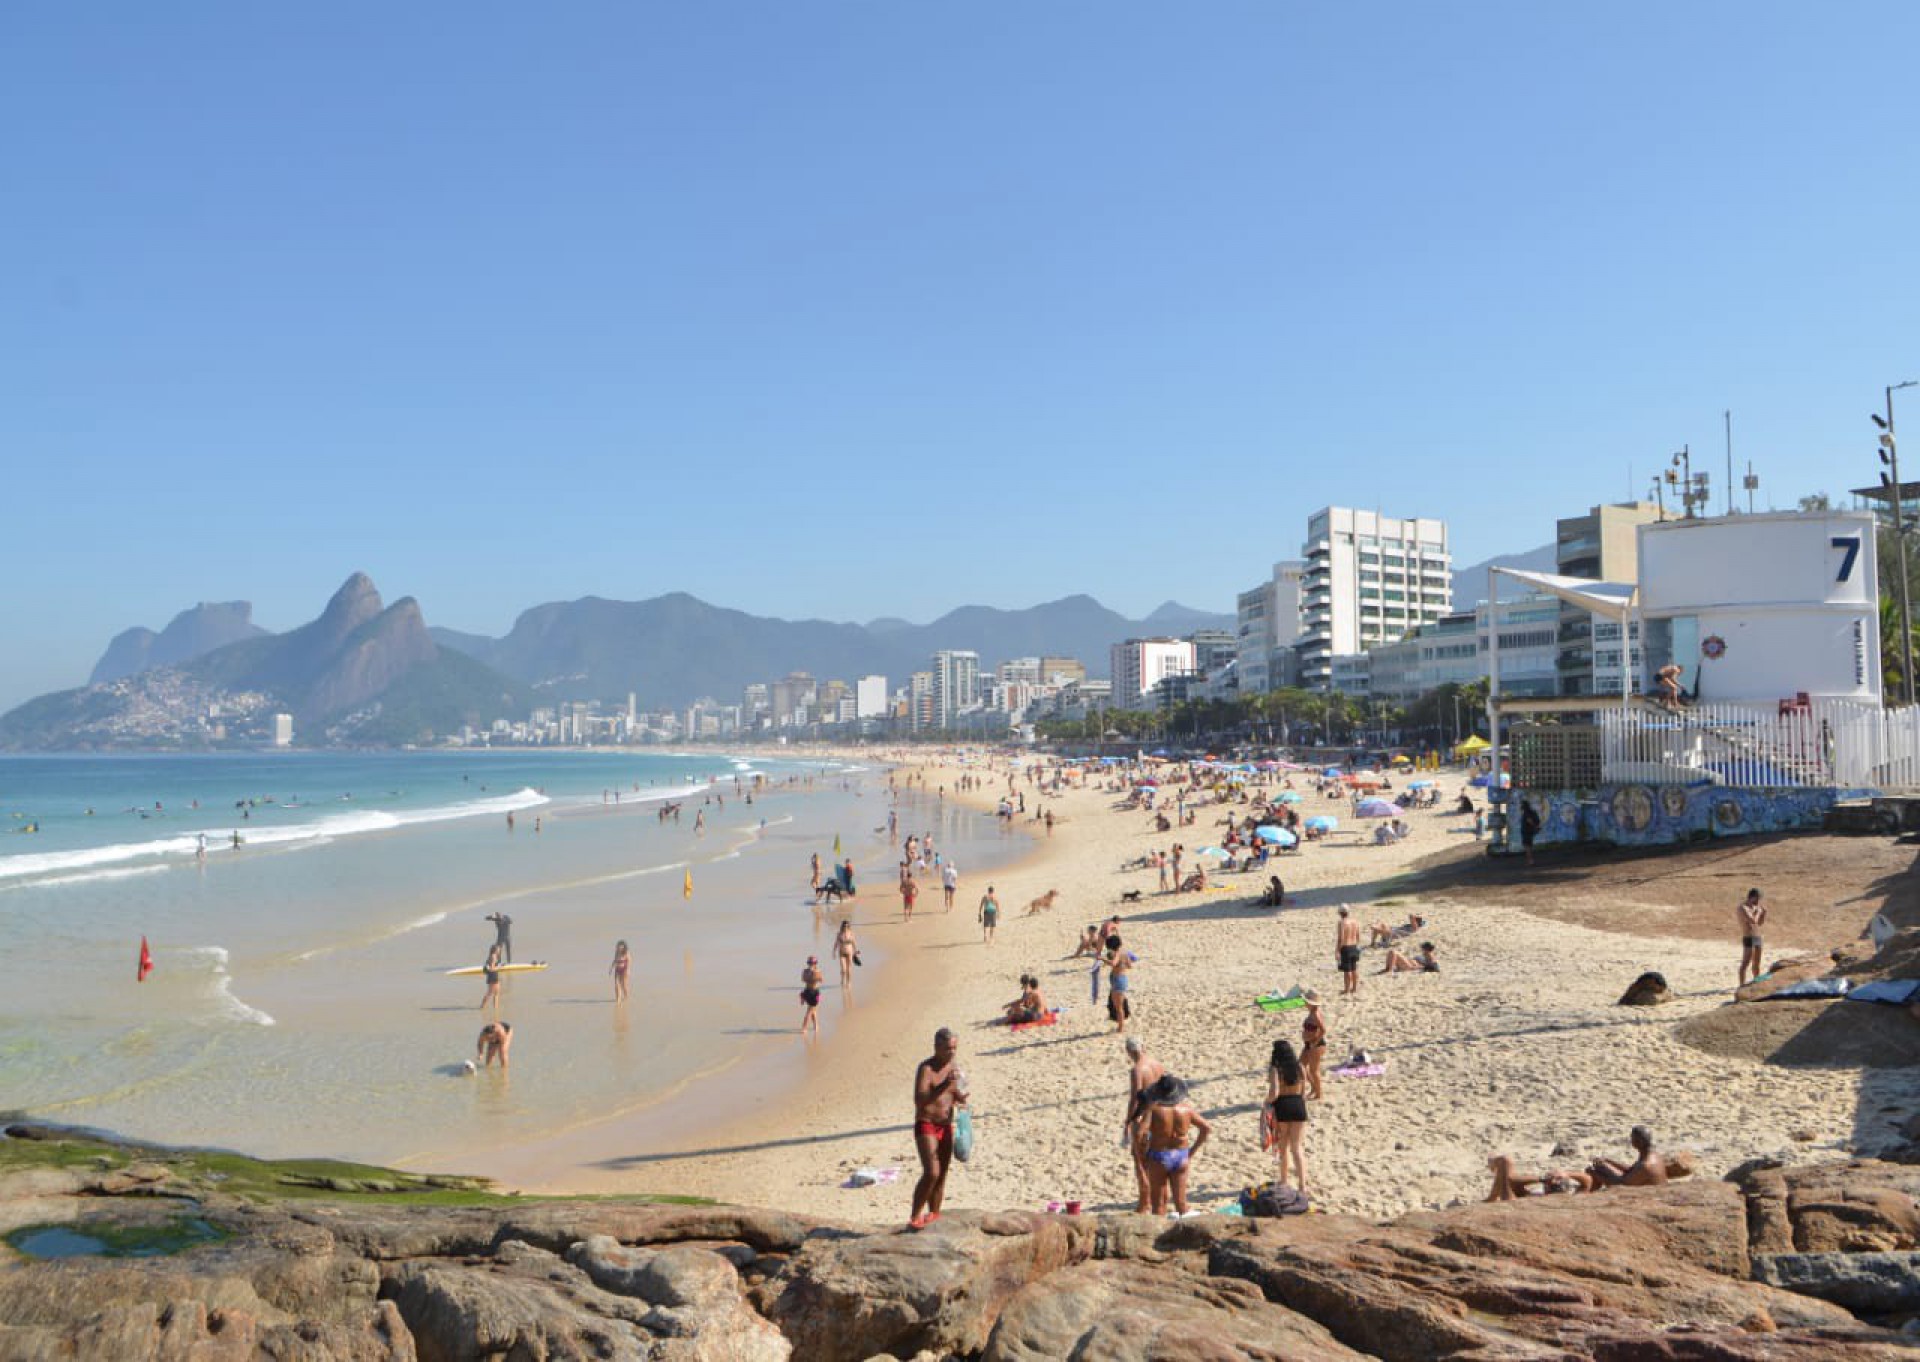 Rio terá fim de semana de sol, calor e céu aberto - Agência O Dia/Sandro Vox